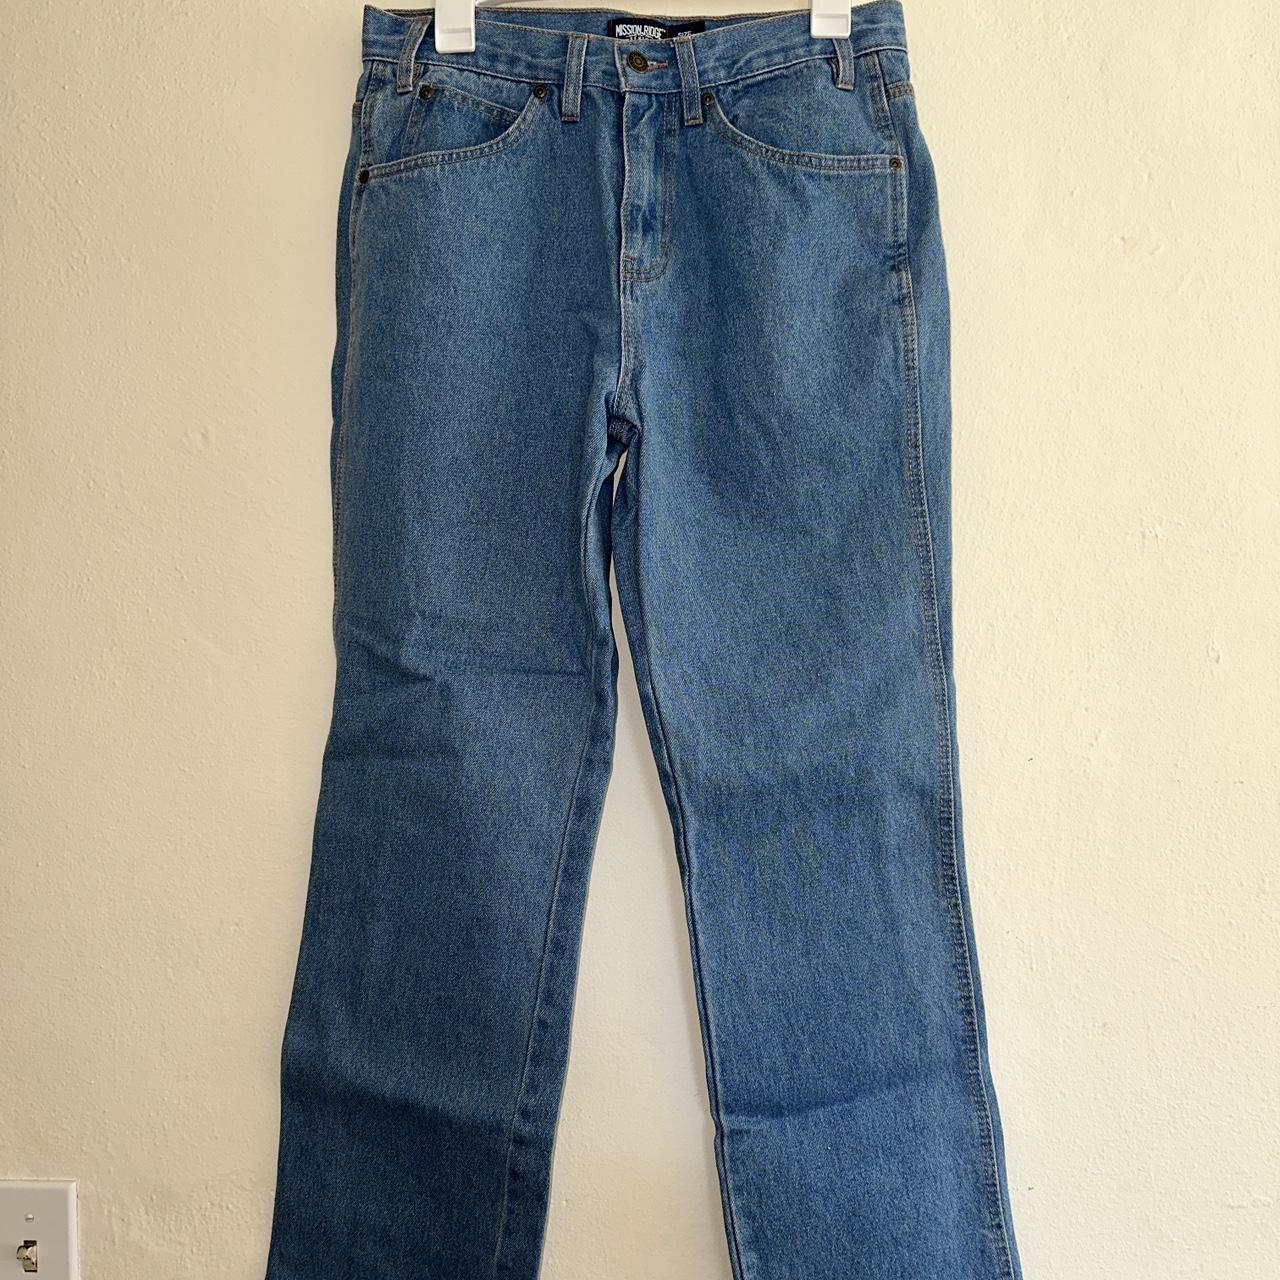 Mission Ridge Blue Jeans size 32x32 Men’s #jeans... - Depop